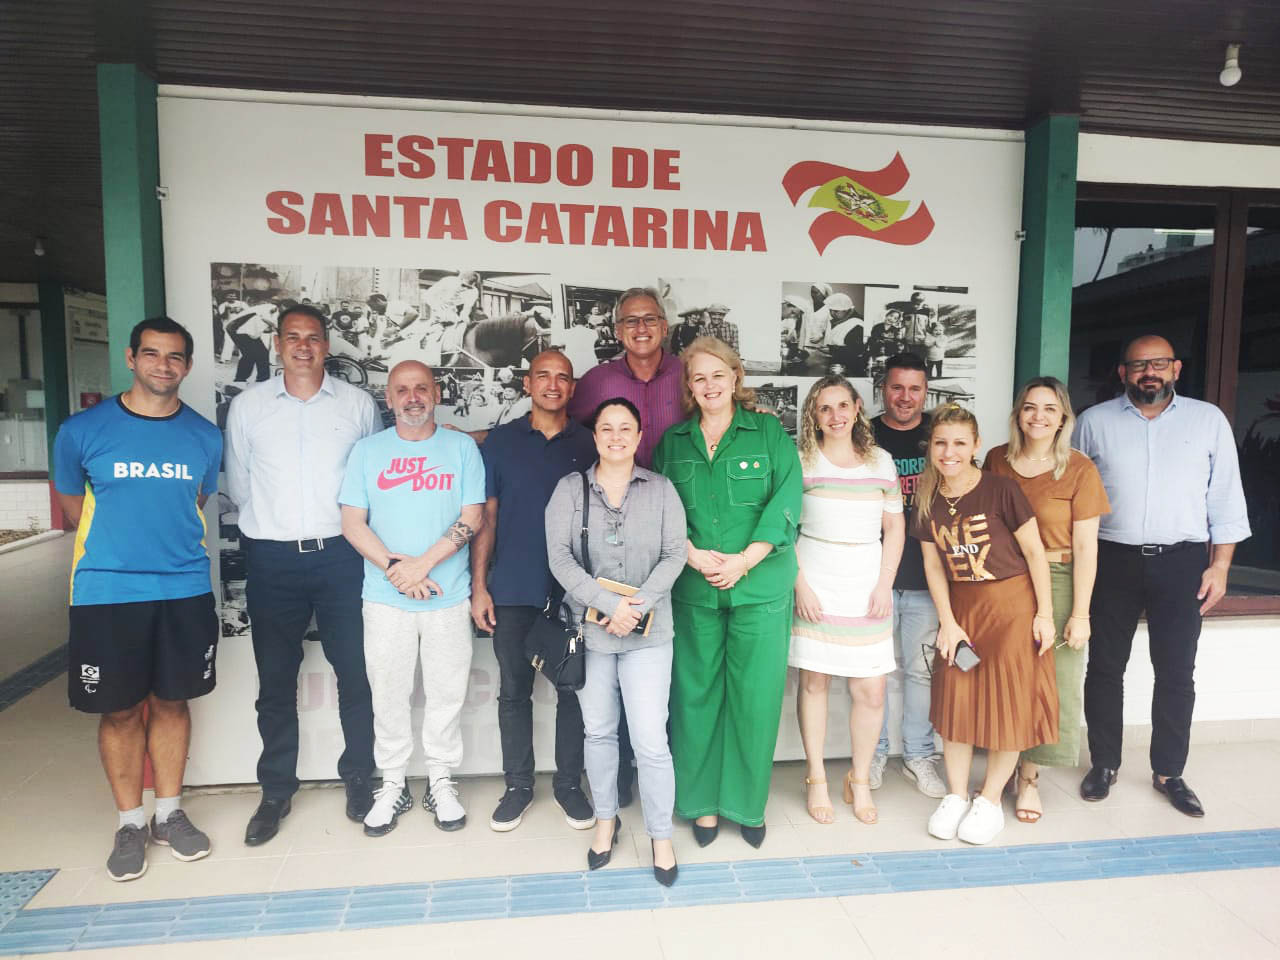 Imagem de 10 pessoas ao fundo letreiro Estado de Santa Catarina